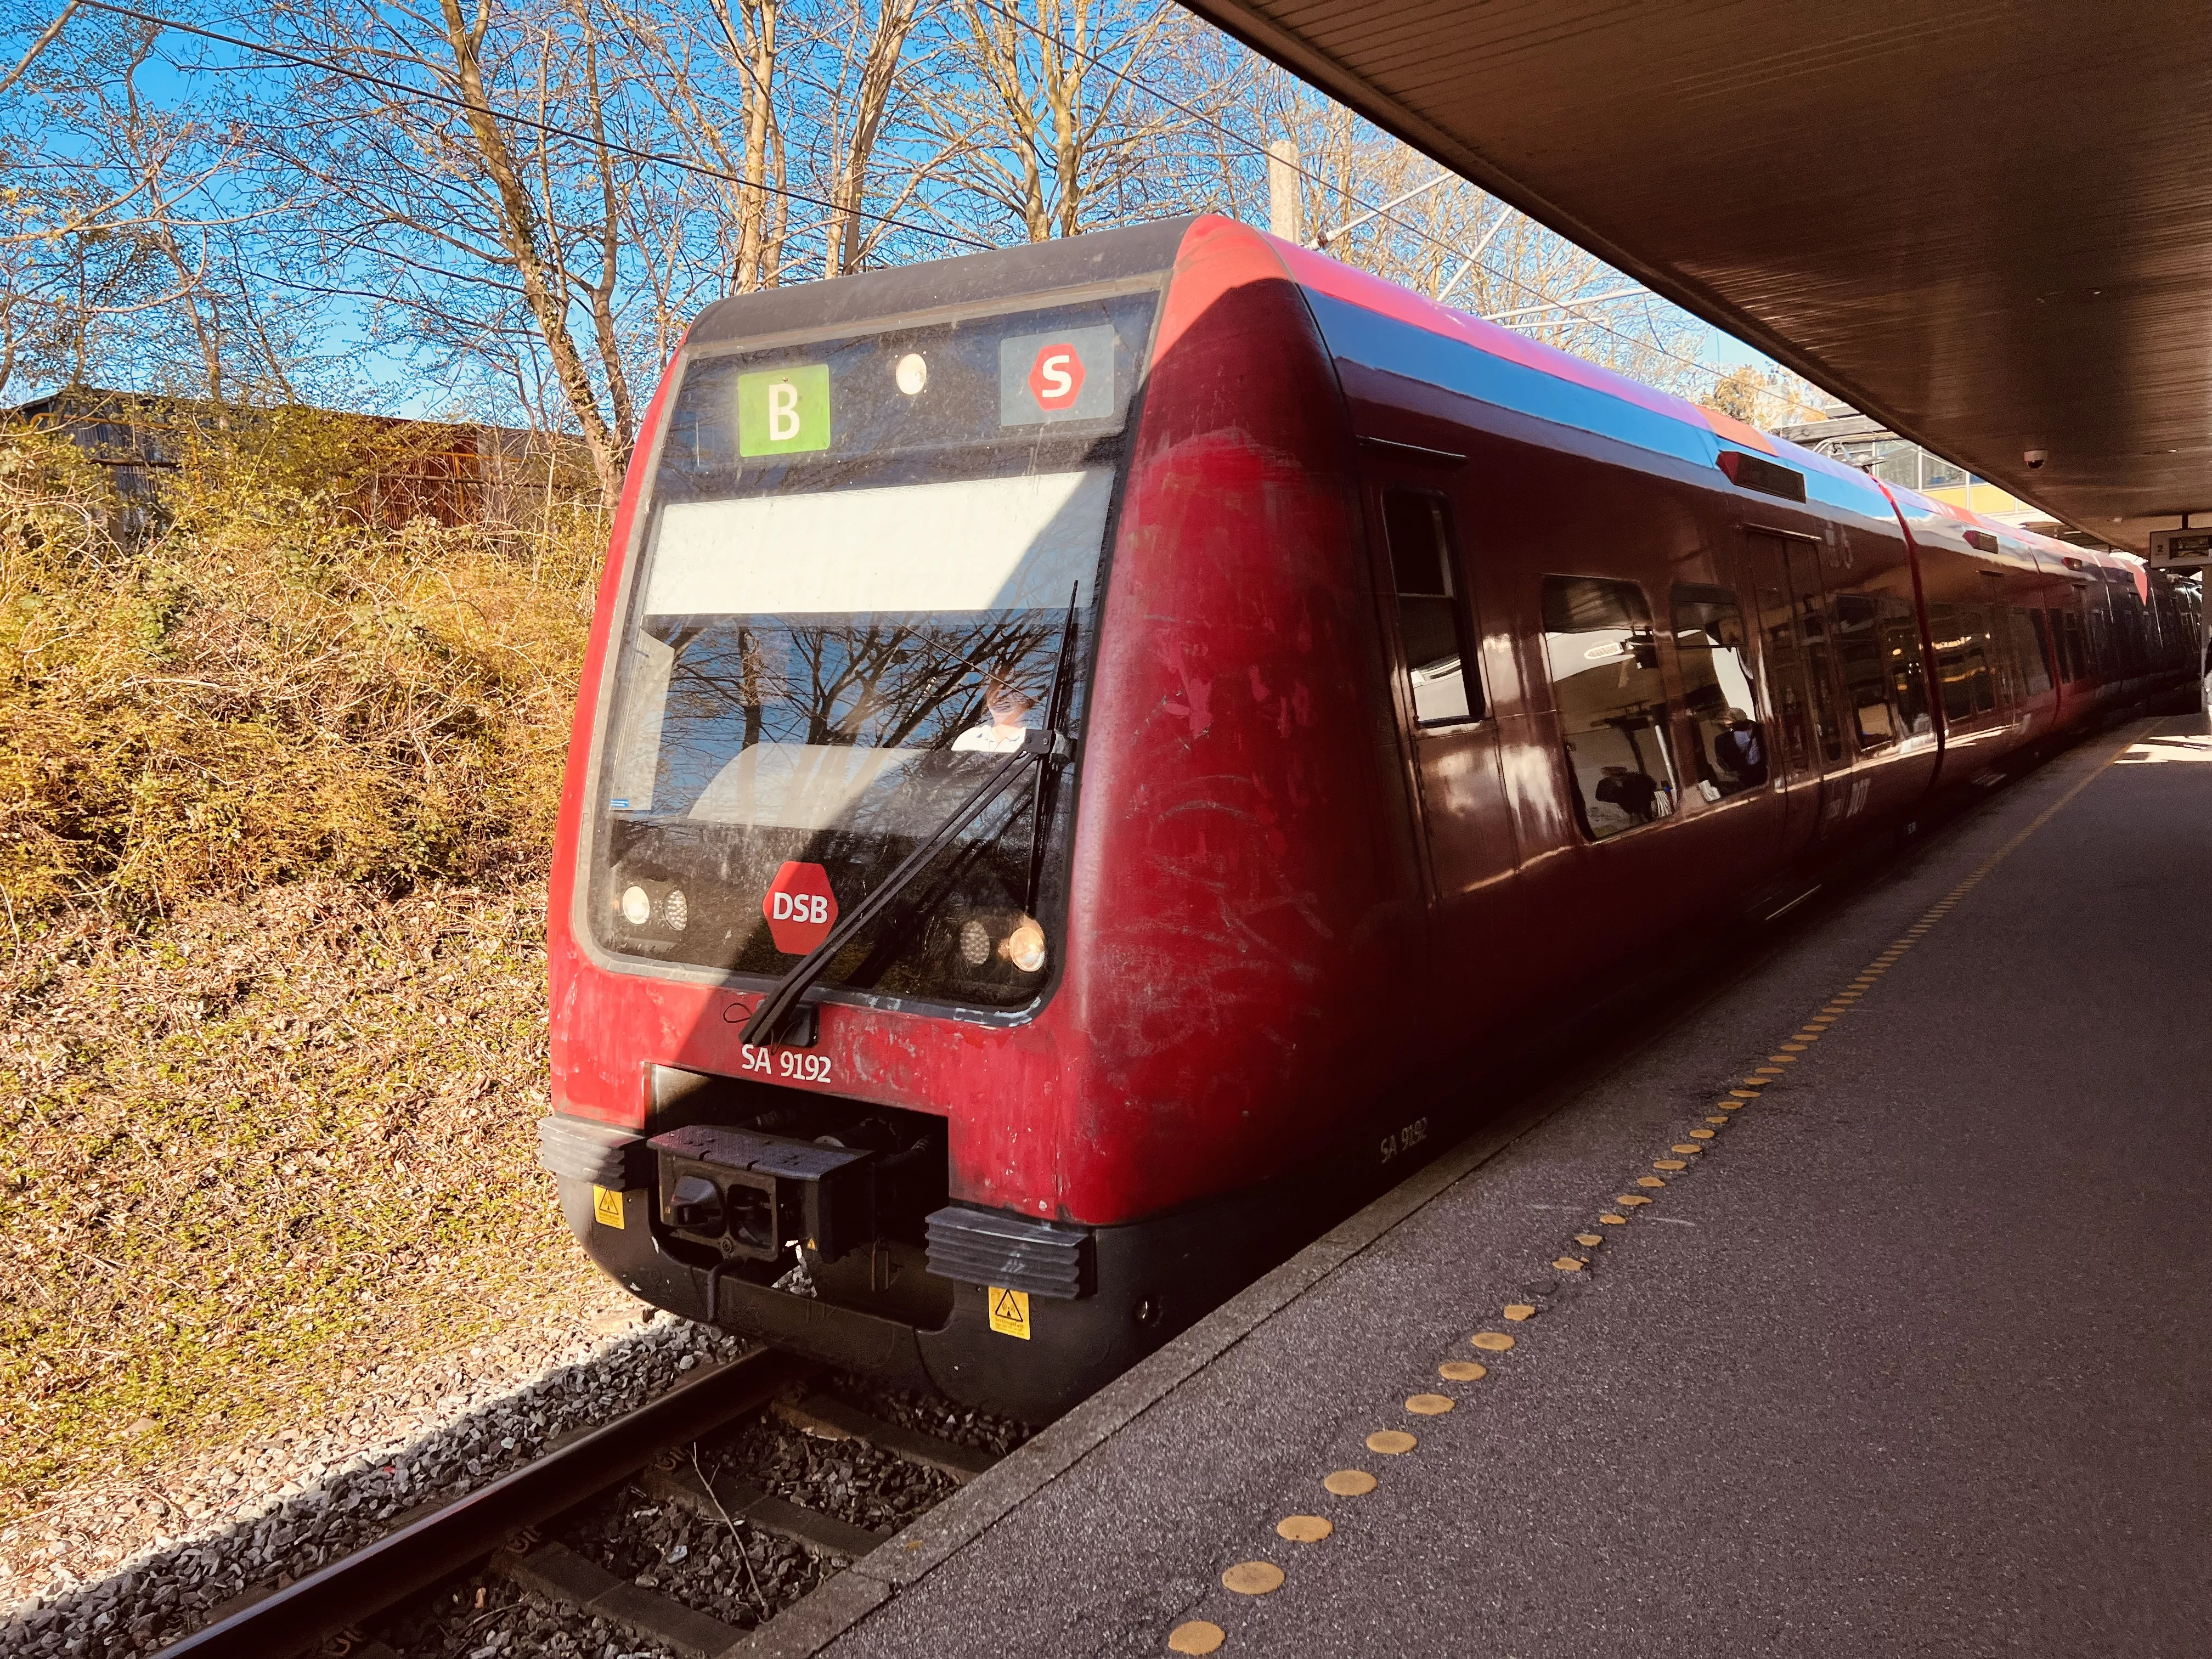 Billede af tog ud for Vangede Station.